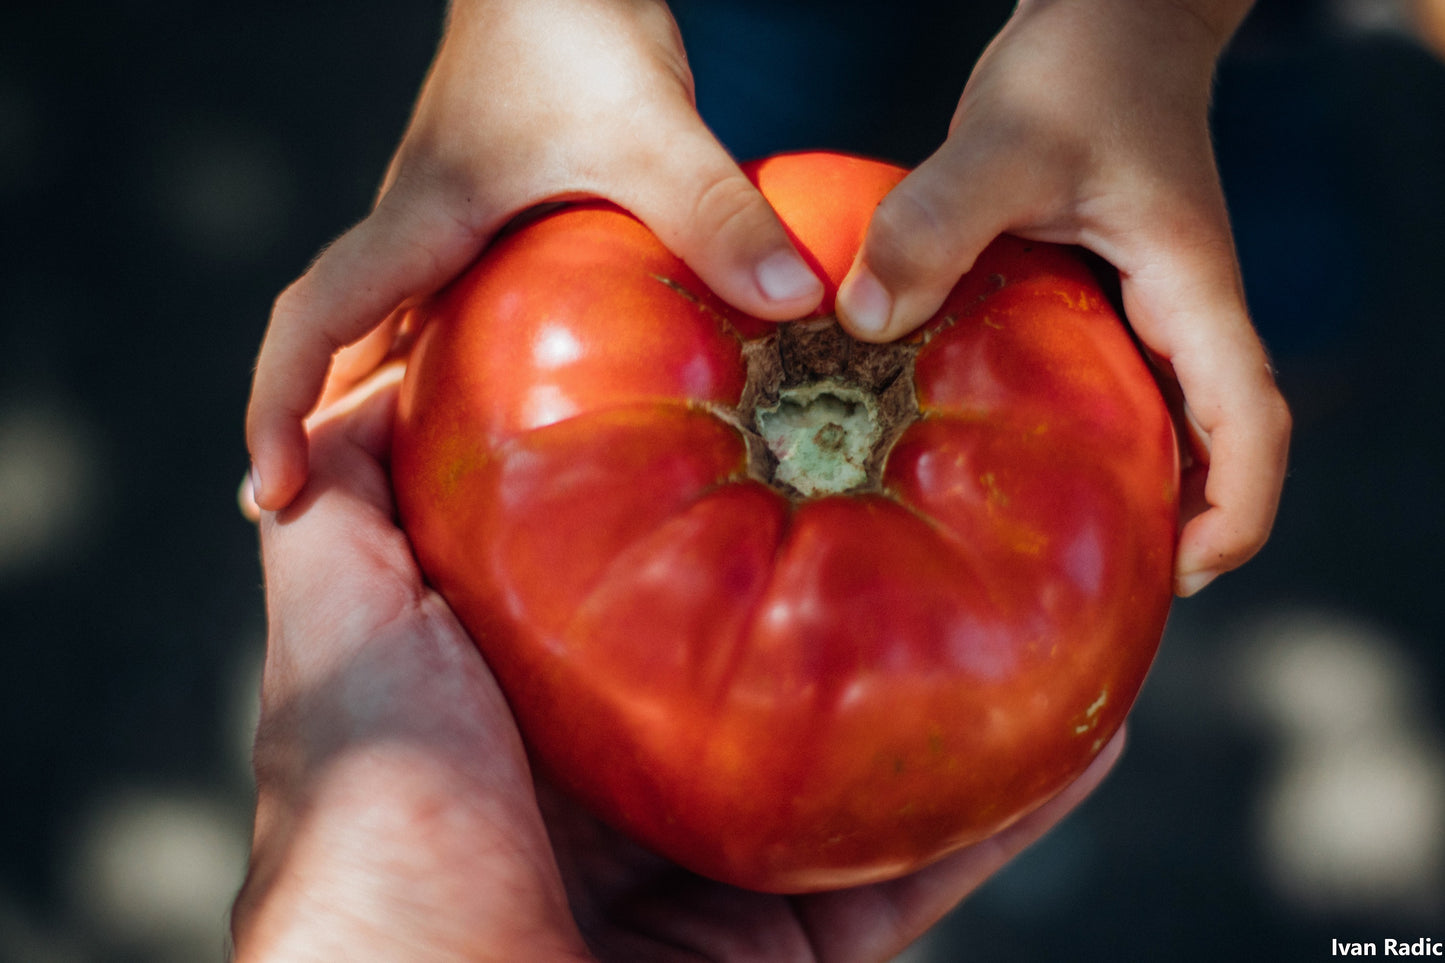 Tomato Gigantomo - World’s Largest Beefsteak Tomato - Up To 2 kg - 10 Seeds Fresh